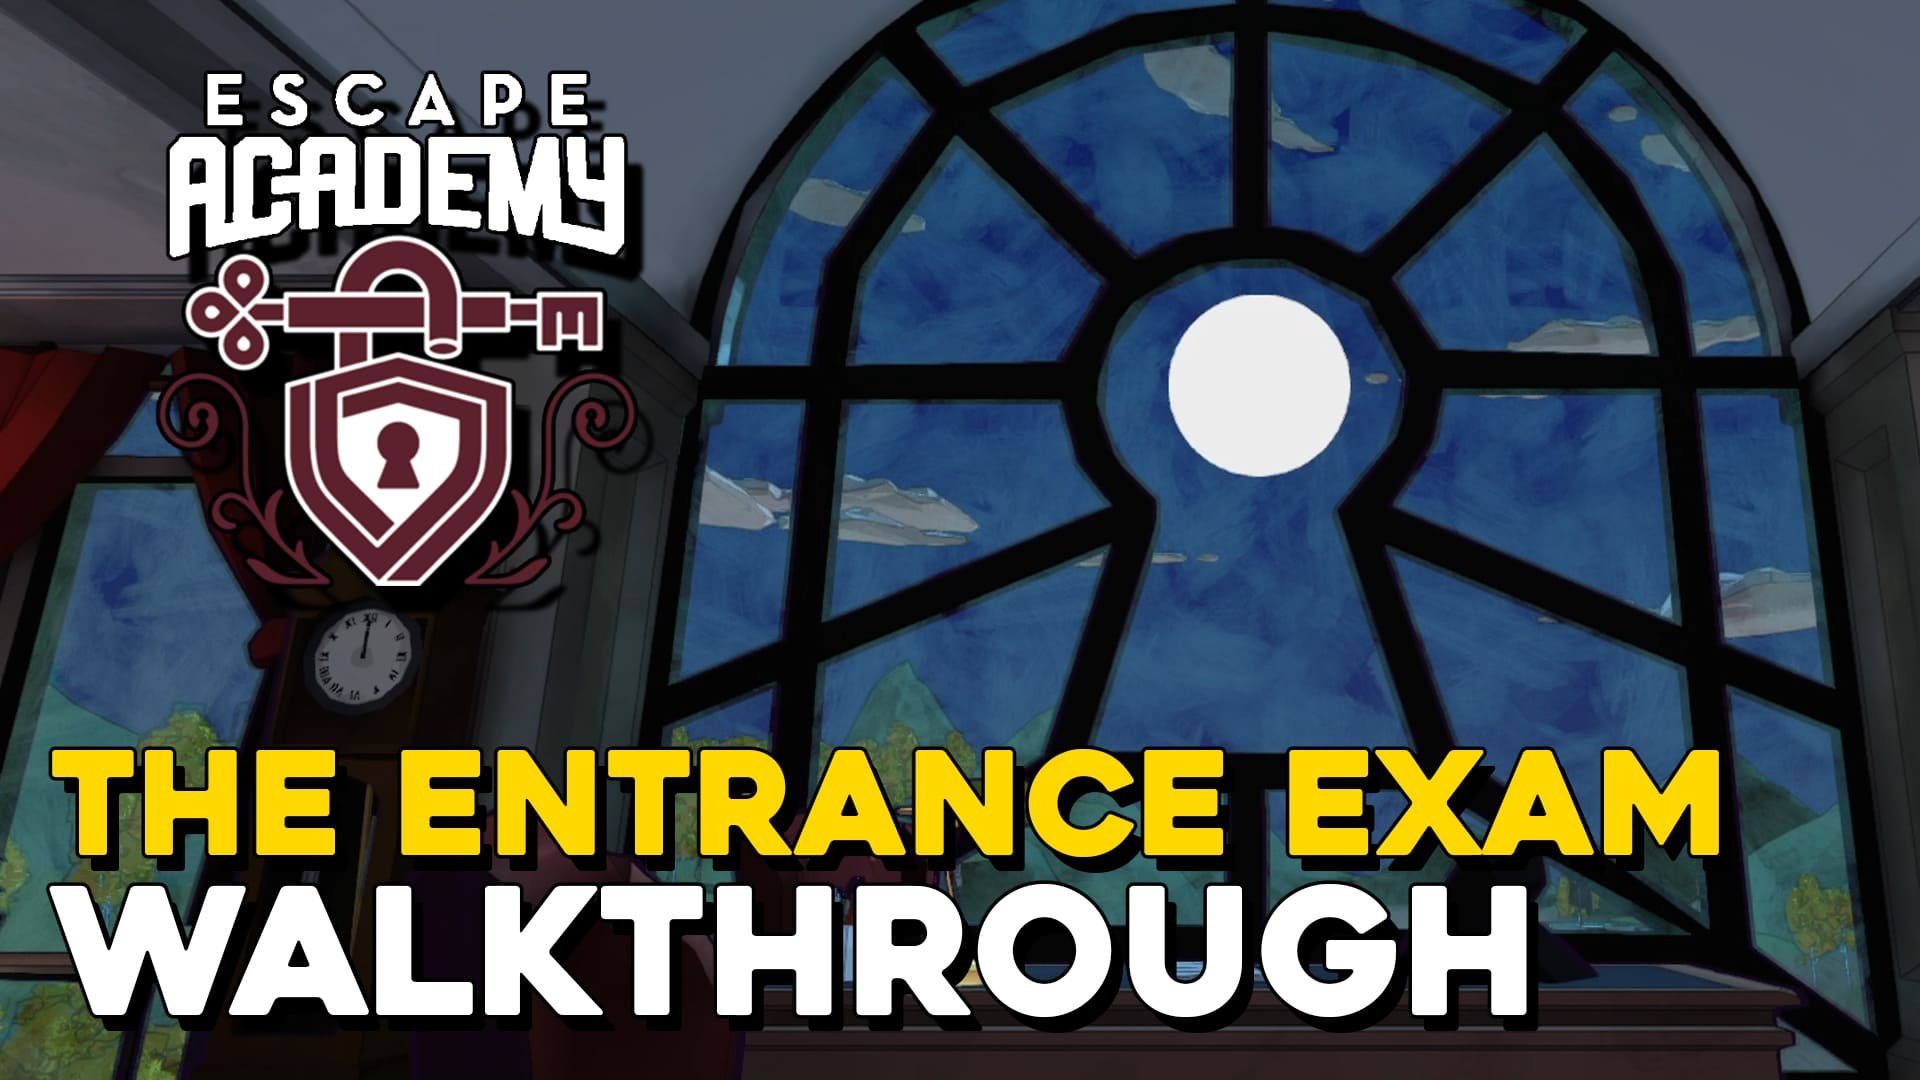 Escape Academy The Entrance Exam Walkthrough (copia)